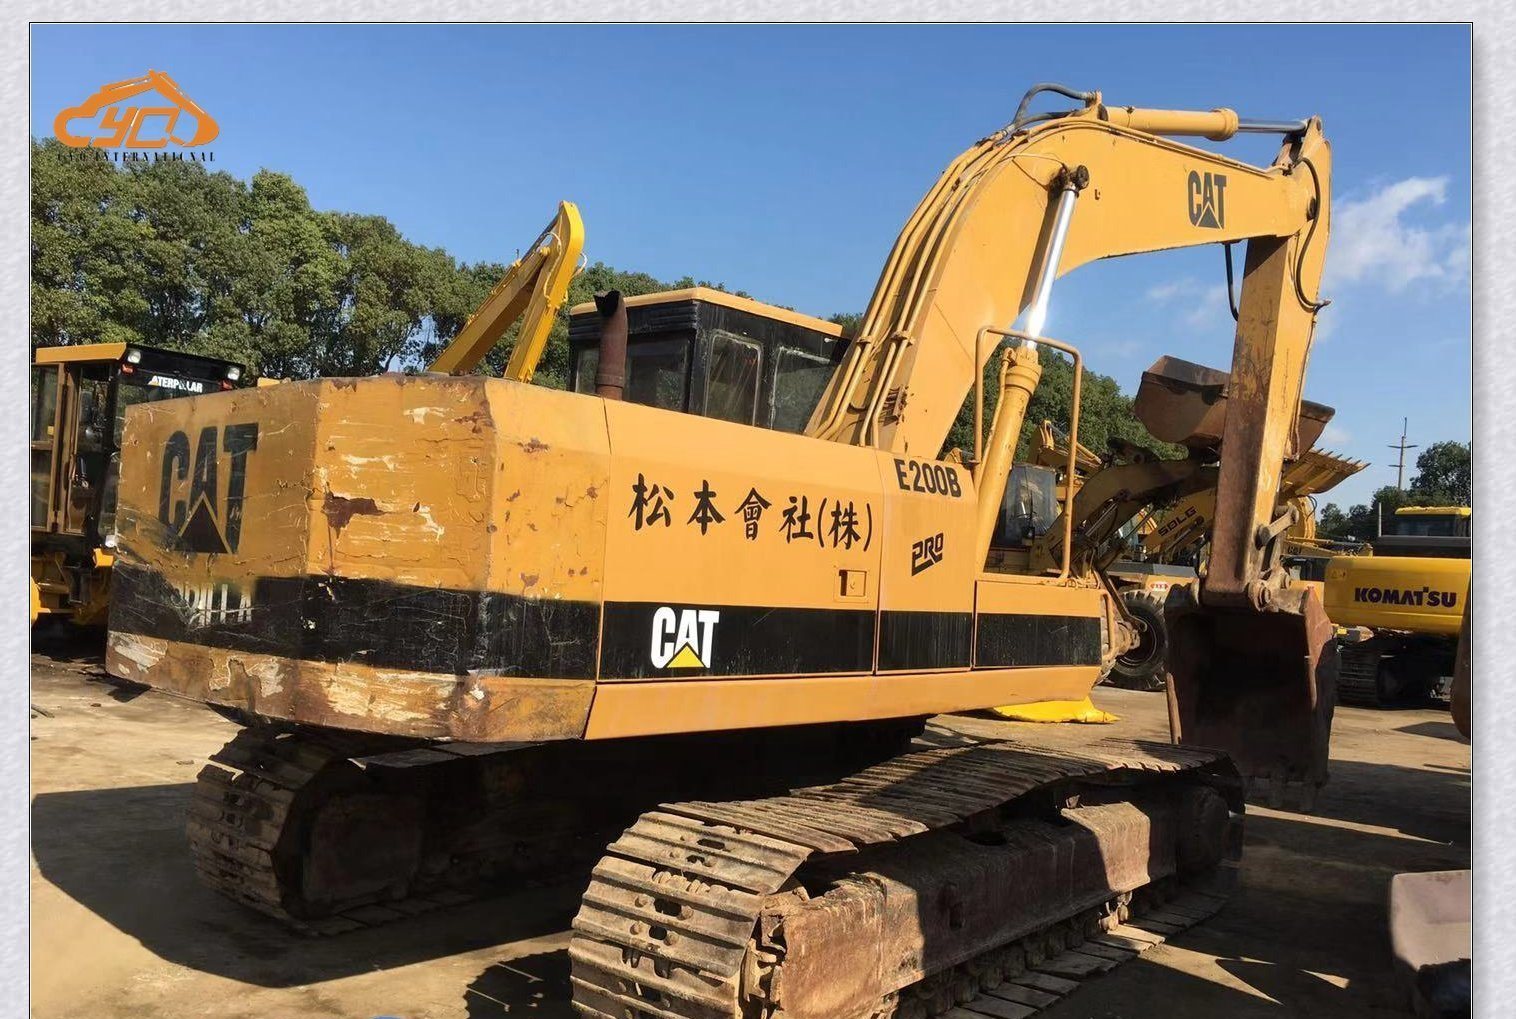 Used Excavator Cat E200b Excavator 0.7m3 Excavator Used Caterpillar 20t Excavator